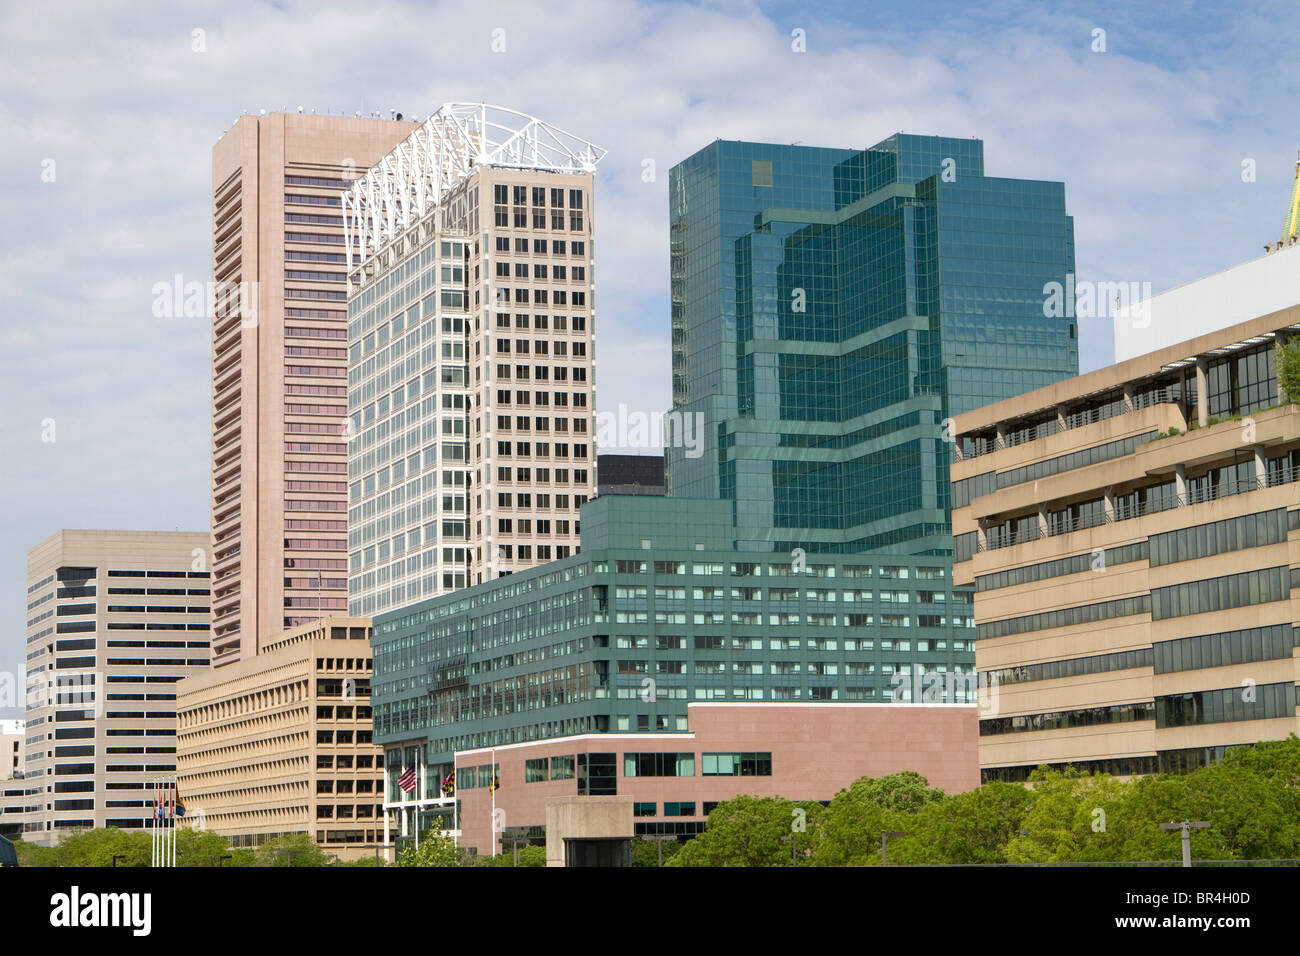 Bürogebäude füllen die Innenstadt von Baltimore, Maryland. Stockfoto